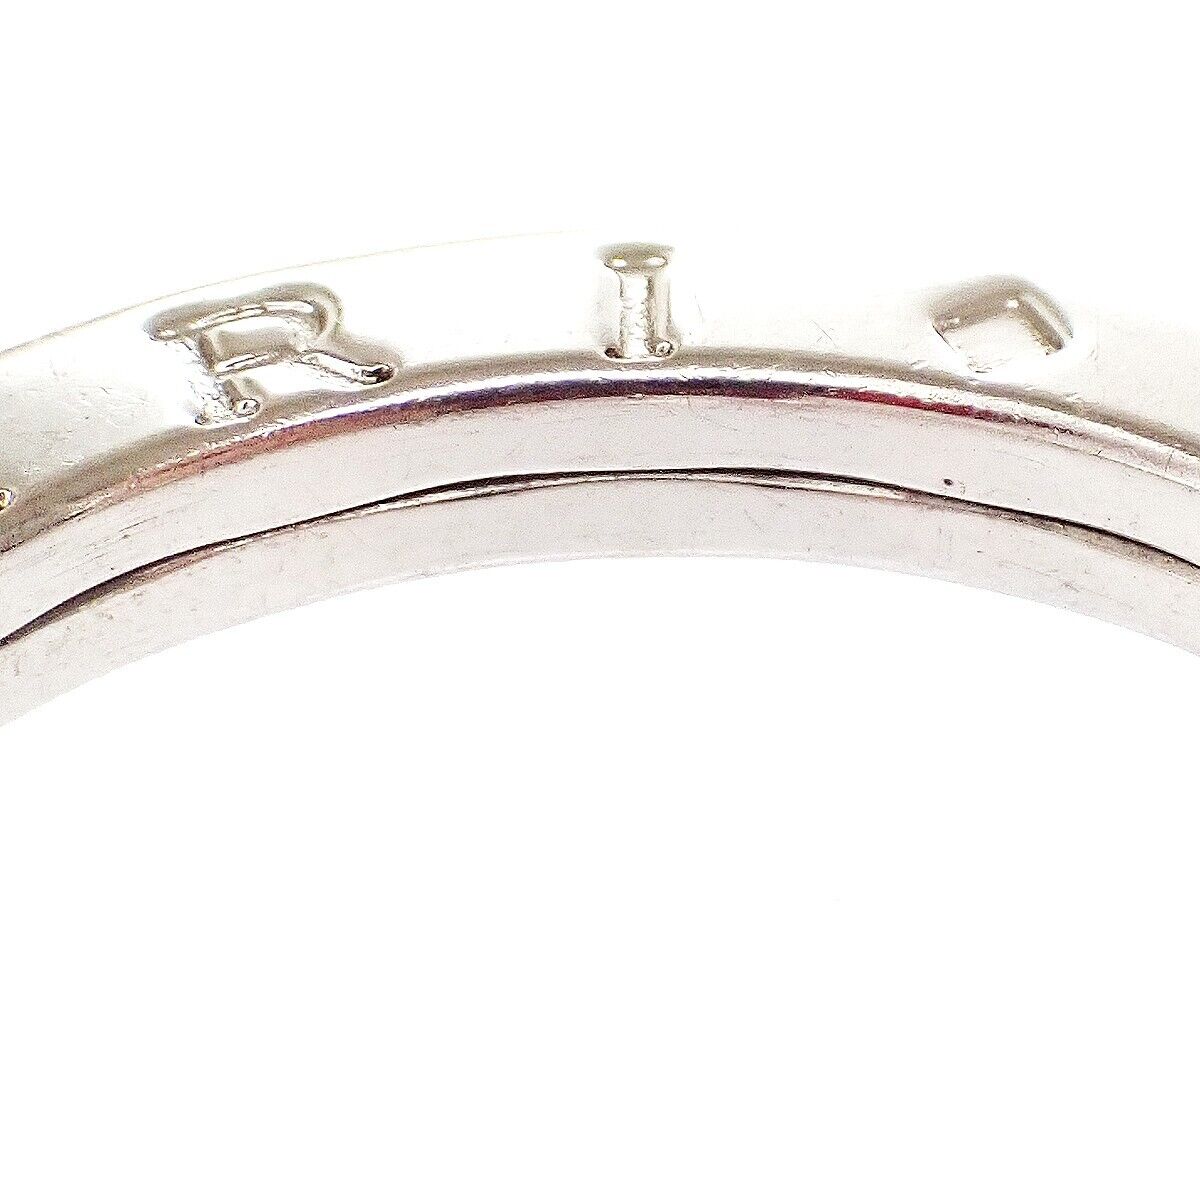 Original/Auth BVLGARI  - Halskette Kettenanhänger Schlüsselring - 925 Silber